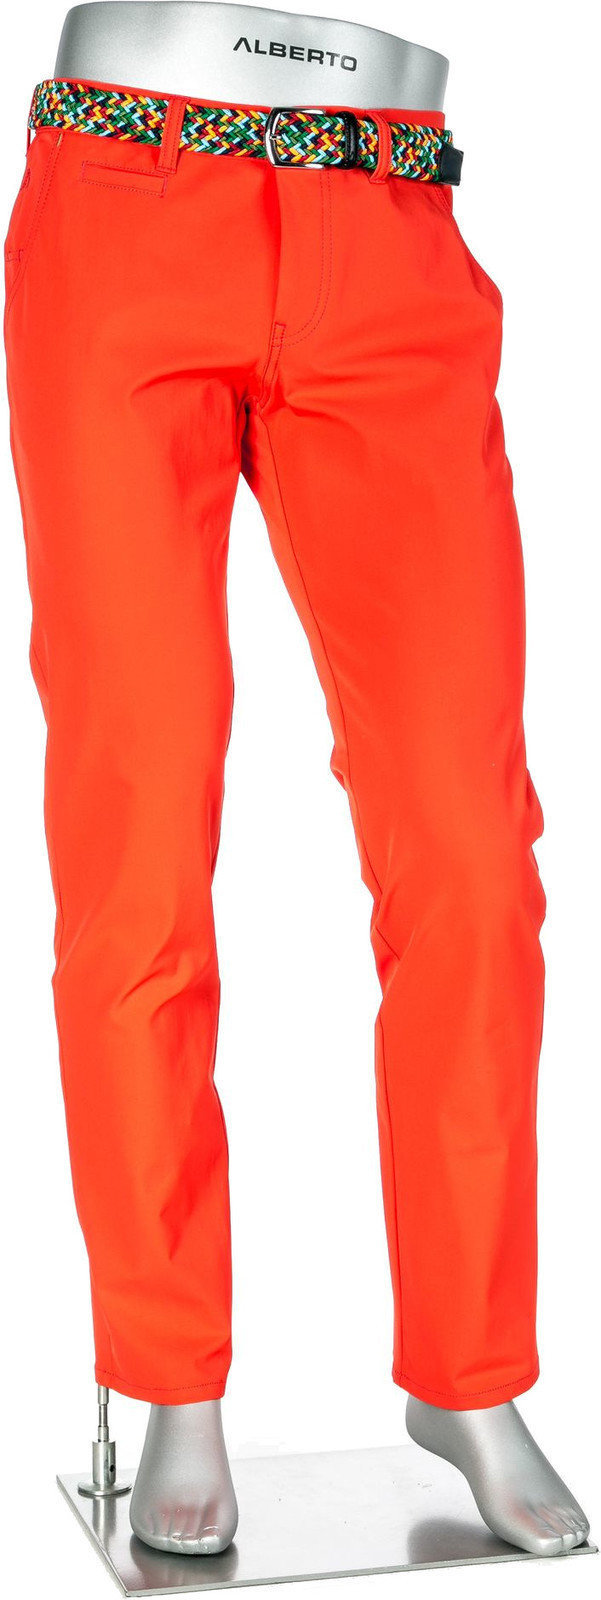 Broek Alberto Rookie 3xDRY Cooler Mens Trousers Orange 46